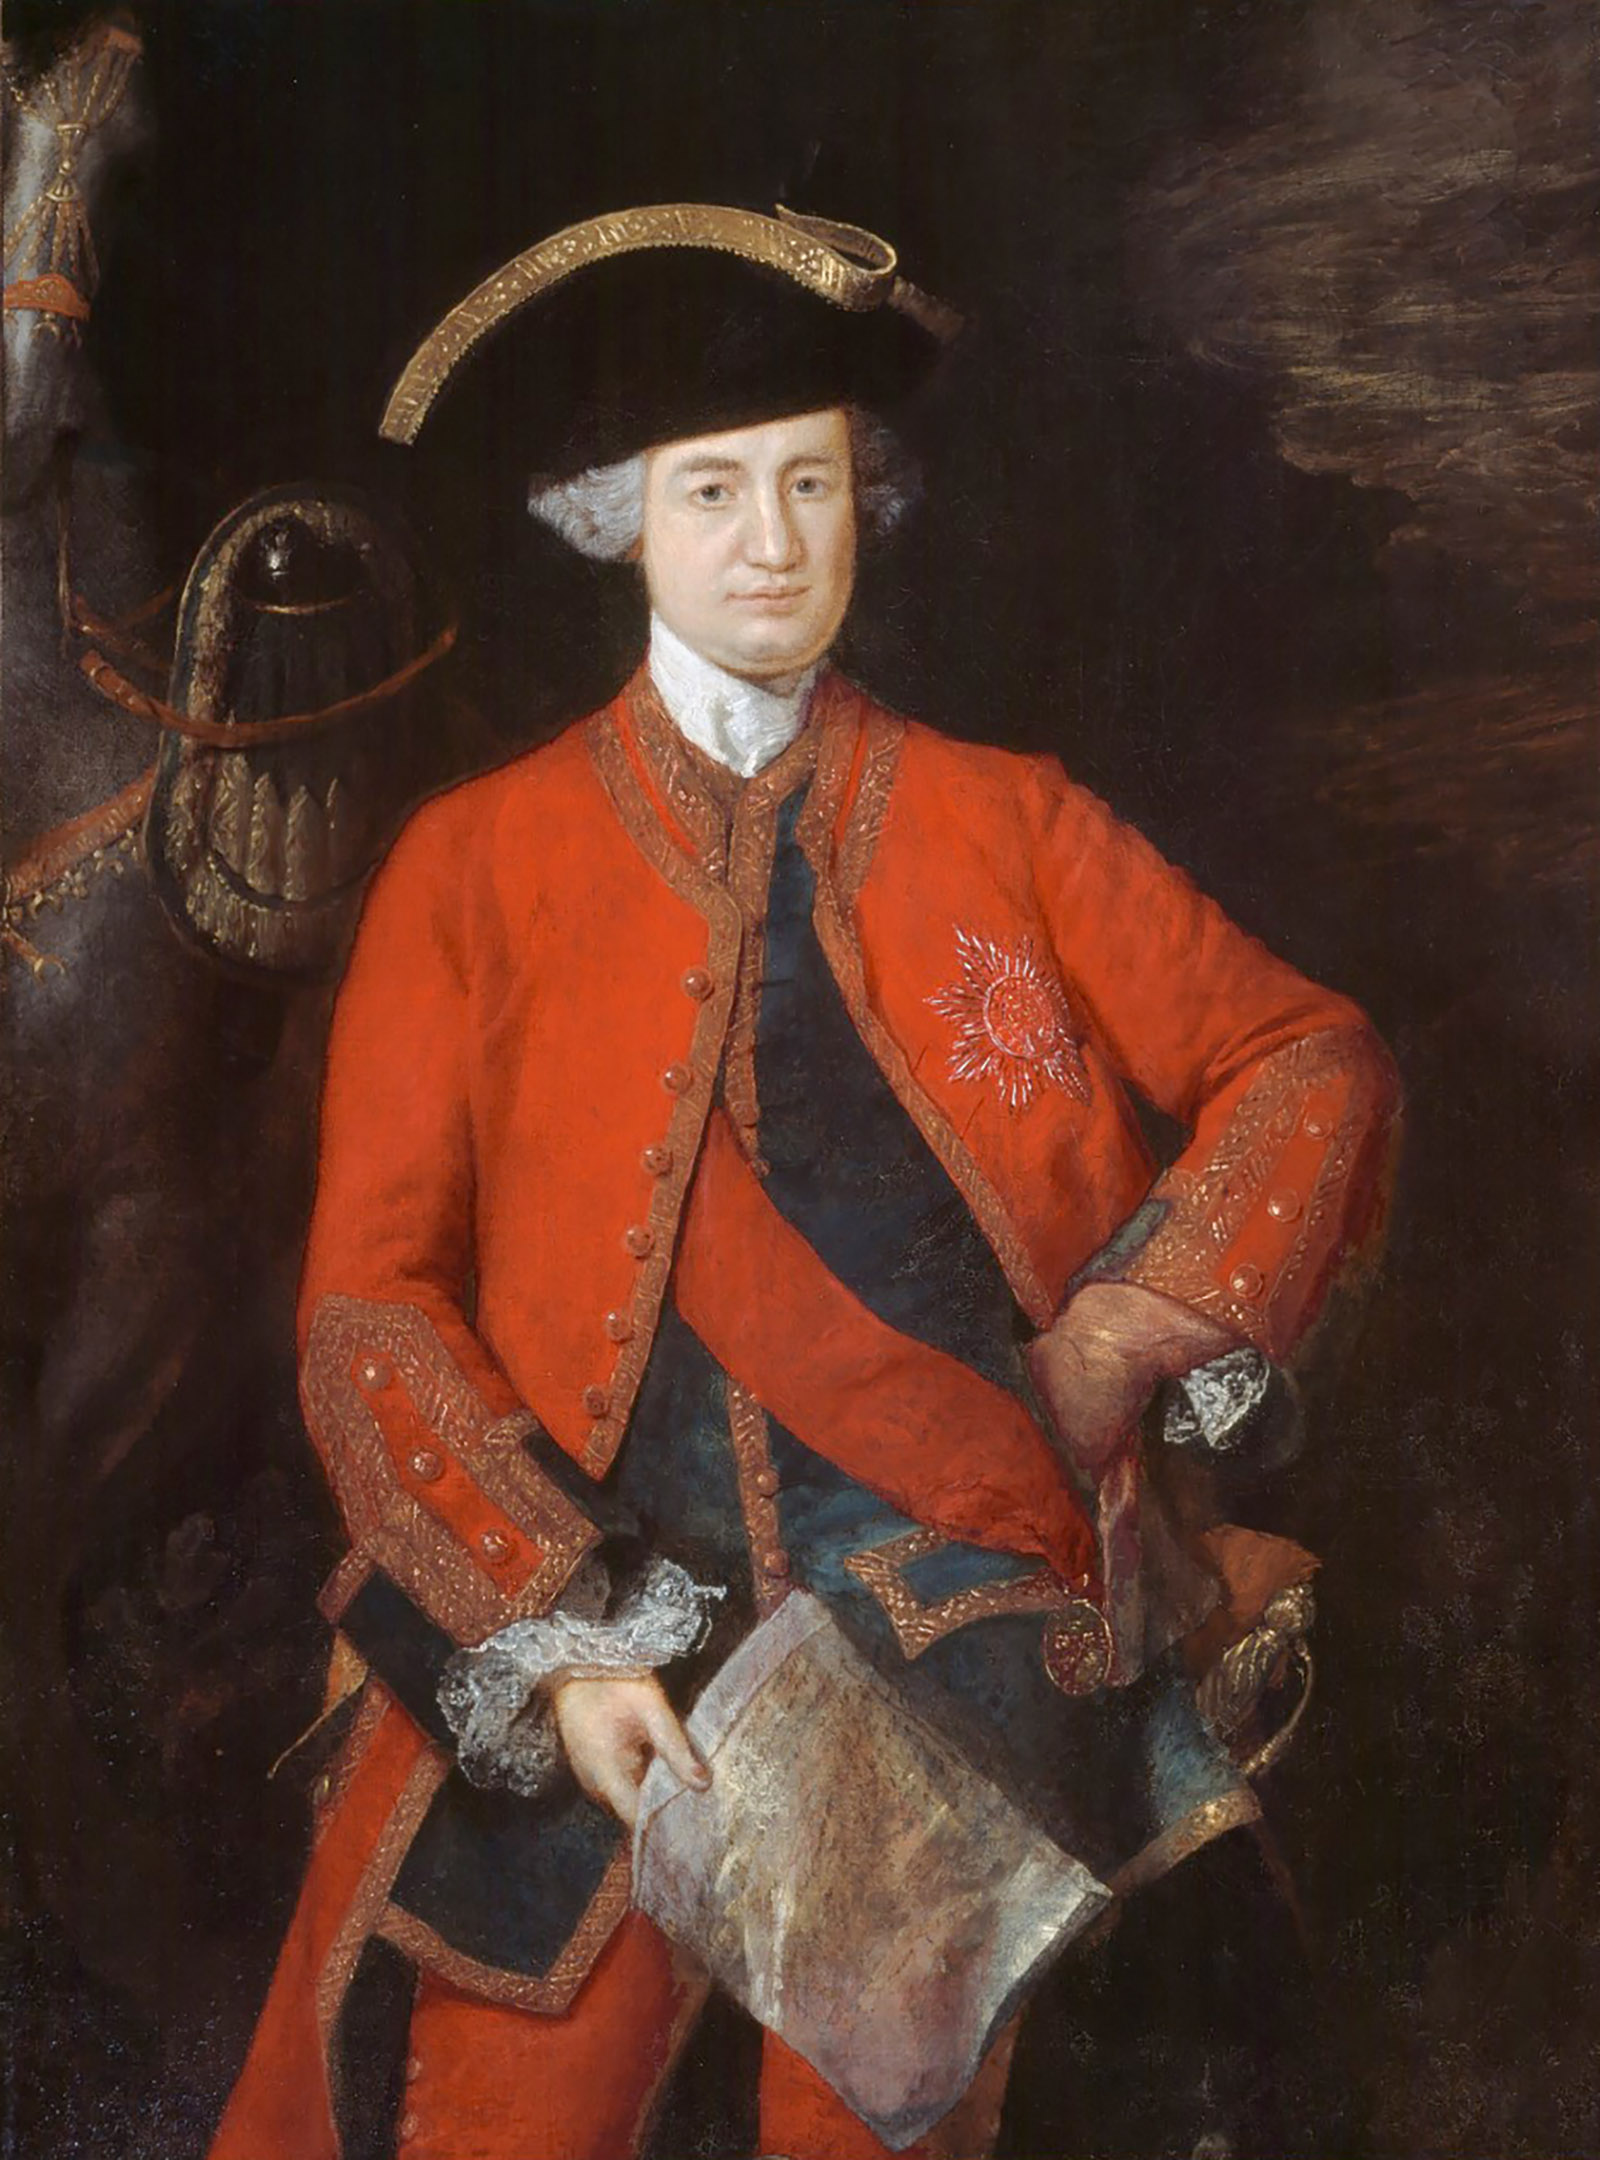 Robert Clive; portrait by Thomas Gainsborough